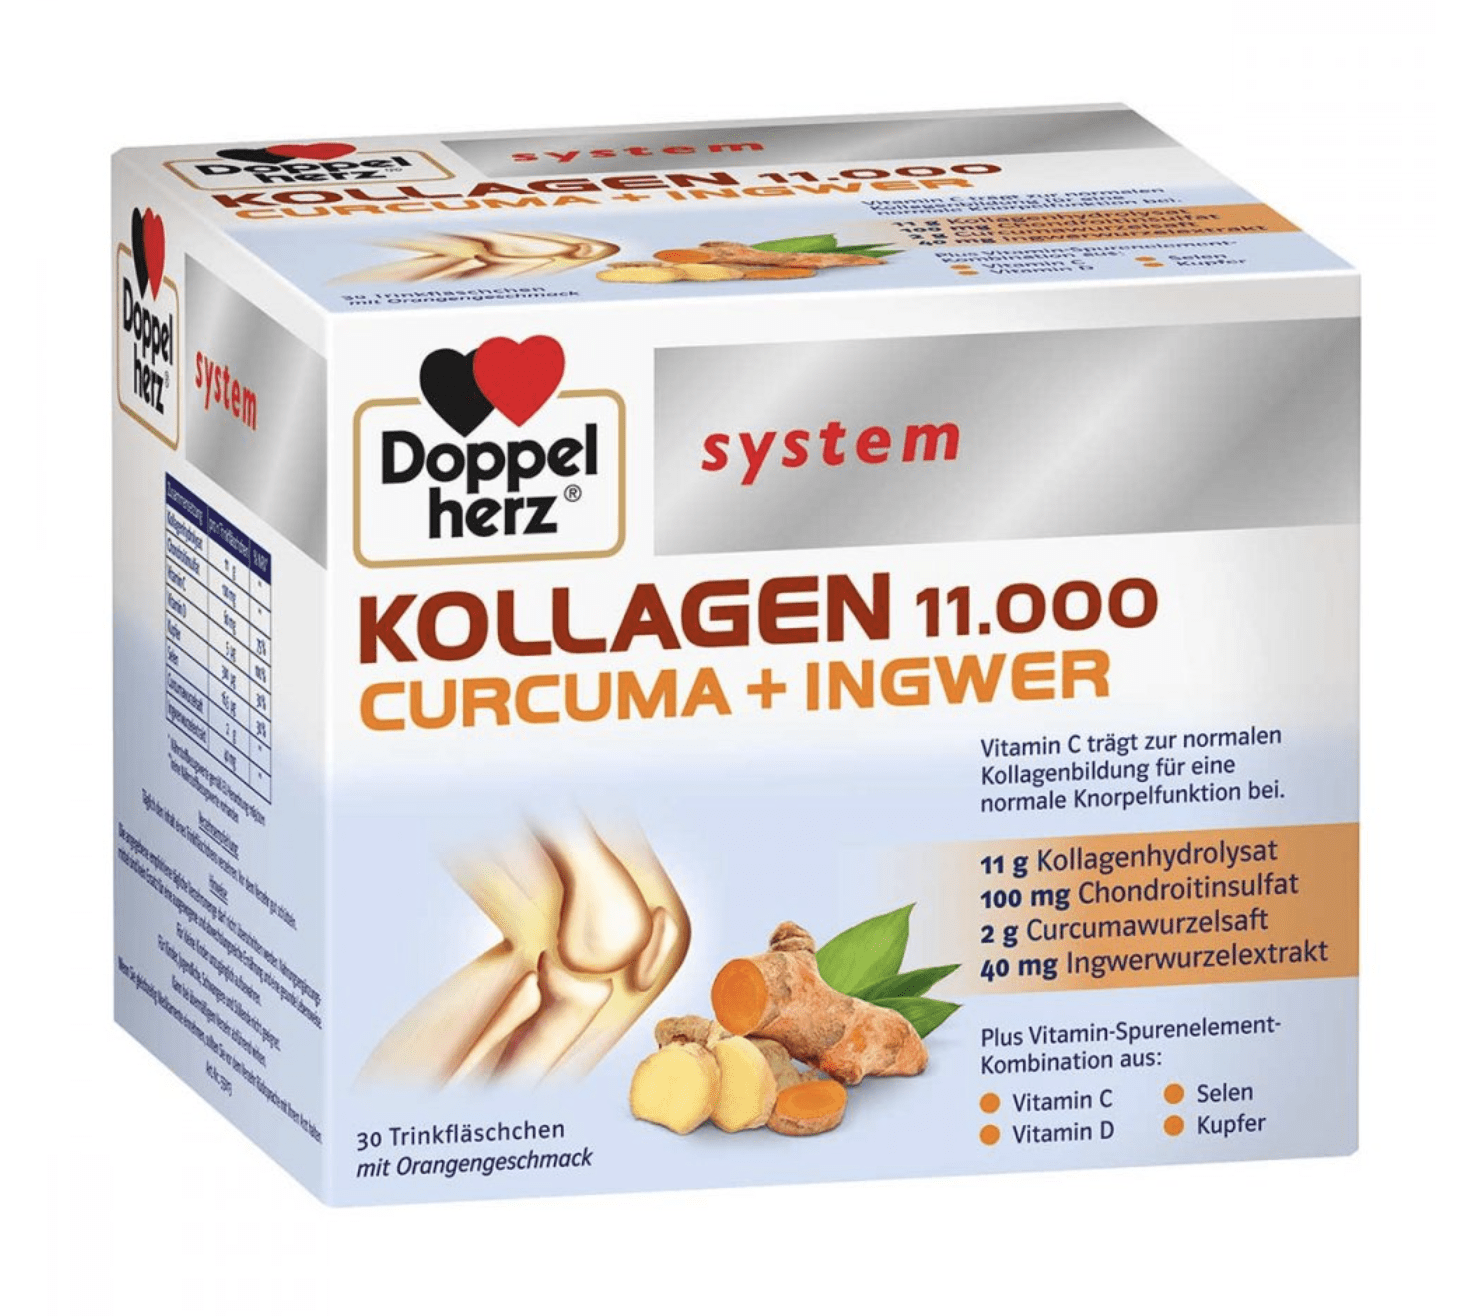 Doppelherz system Kollagen 11.000 Curcuma + Ingwer